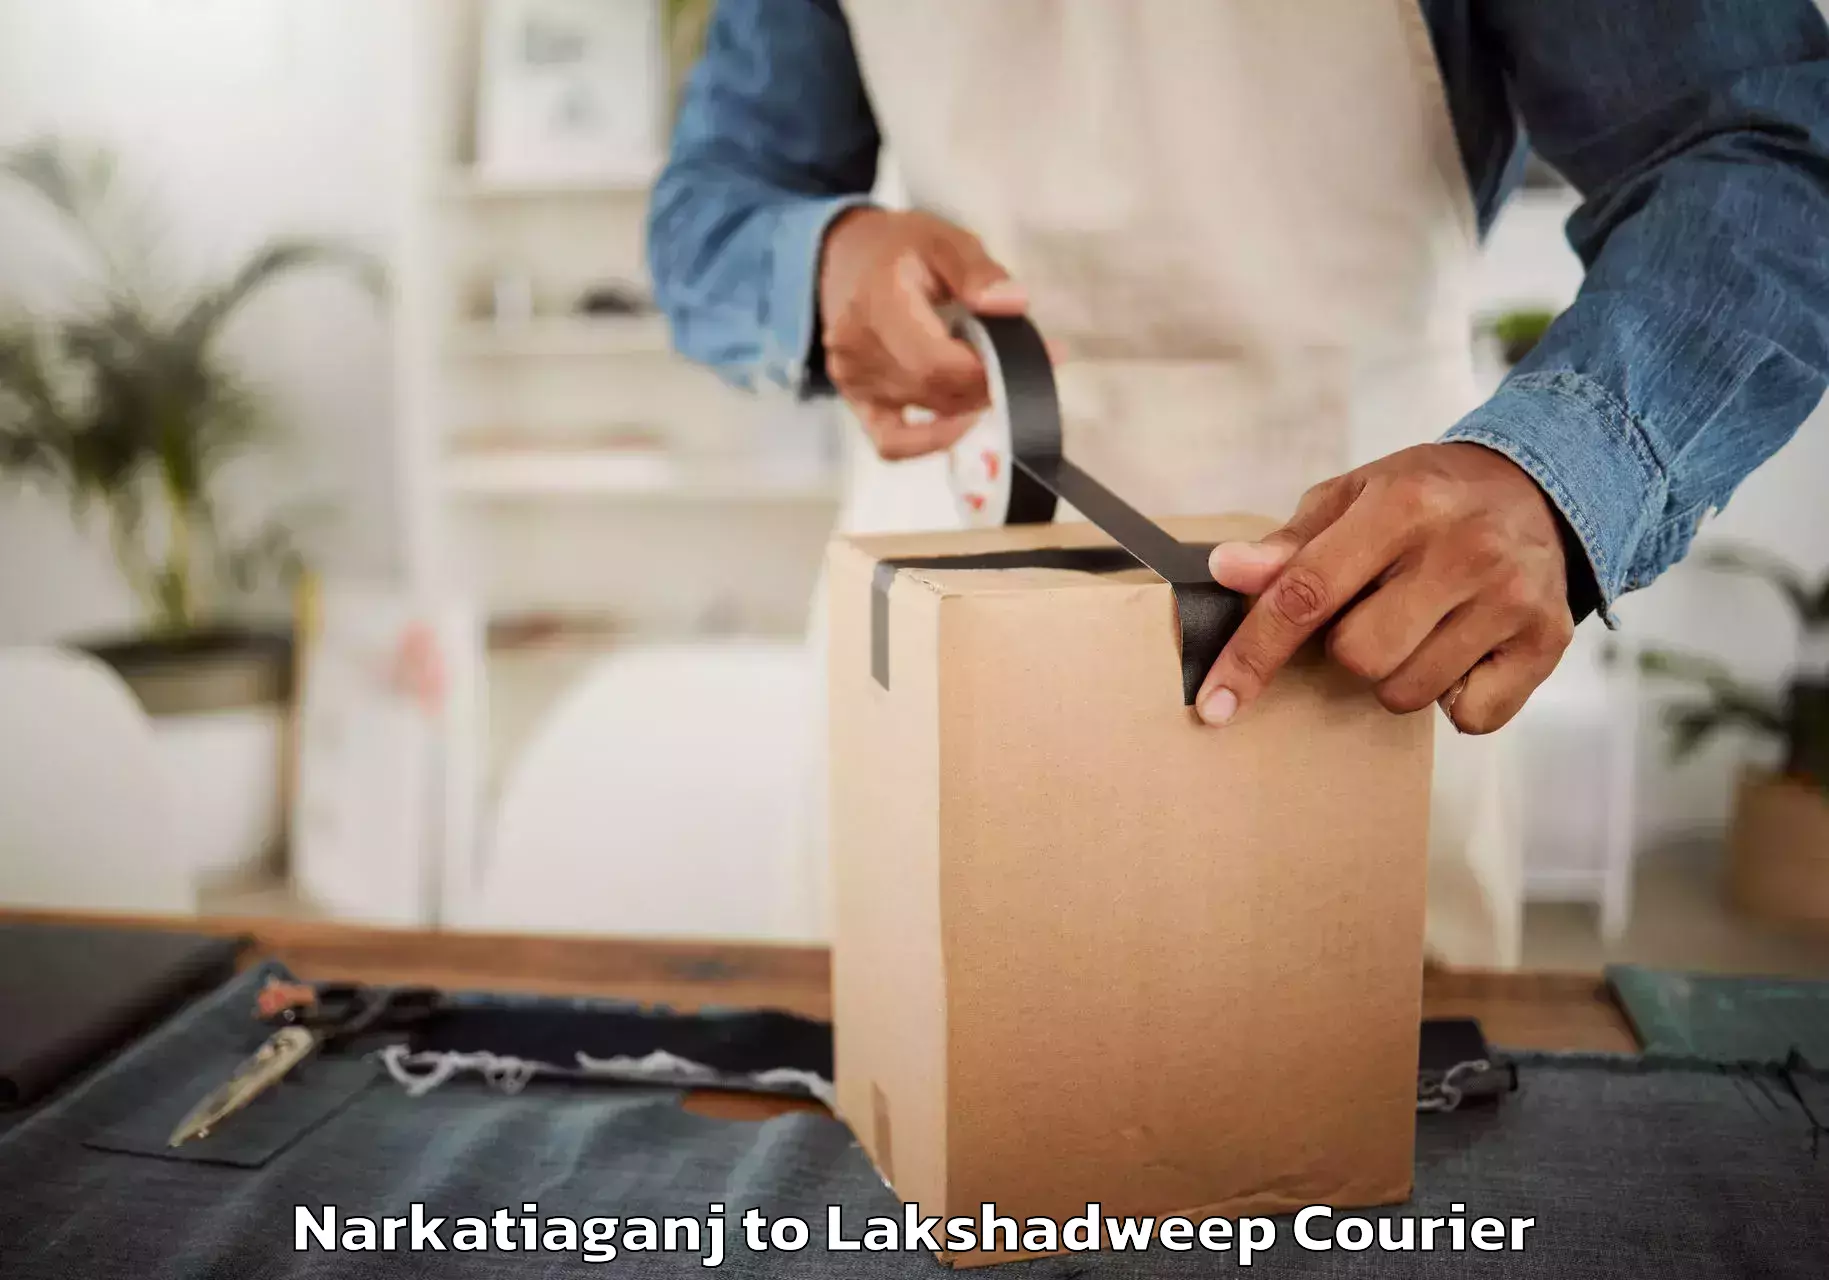 Professional movers and packers Narkatiaganj to Lakshadweep